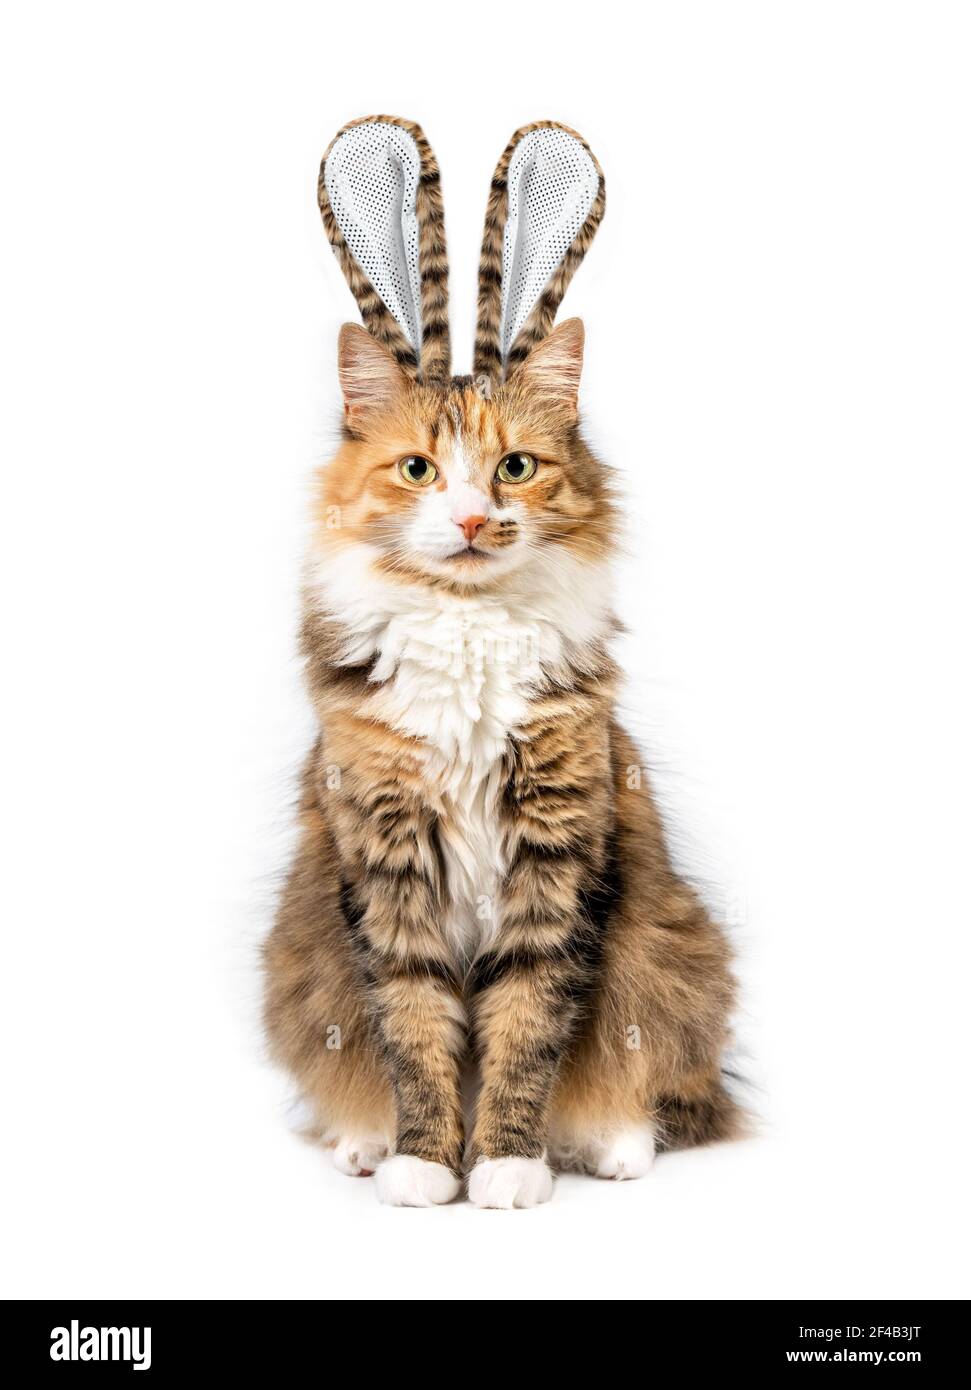 Katze verkleidet als Osterhase. Lustige Ostern Urlaub Themen Katze Porträt.  Eine flauschige Kitty mit passendem Fell Kaninchenohren sitzt und schaut  auf die Cam Stockfotografie - Alamy